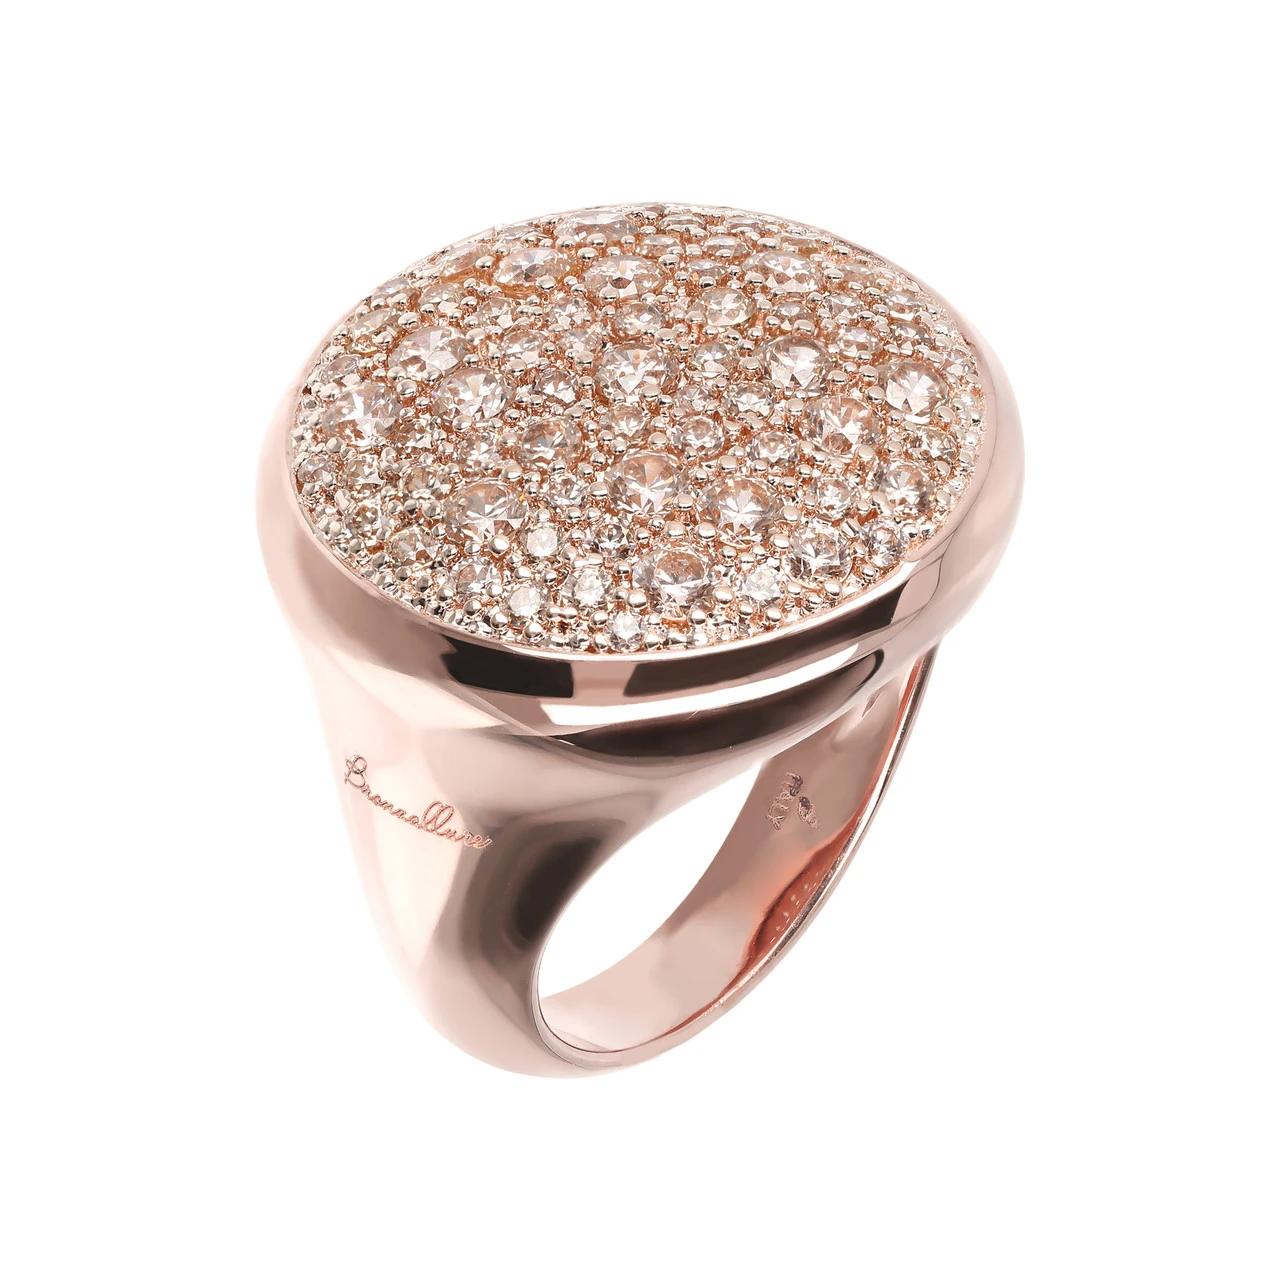 الجملة خاتم مطلي بالذهب الوردي في 925 الفضة الاسترليني OEM / ODM تصميم المجوهرات المخصصة الموردين تاجر الجملة المجوهرات الجميلة